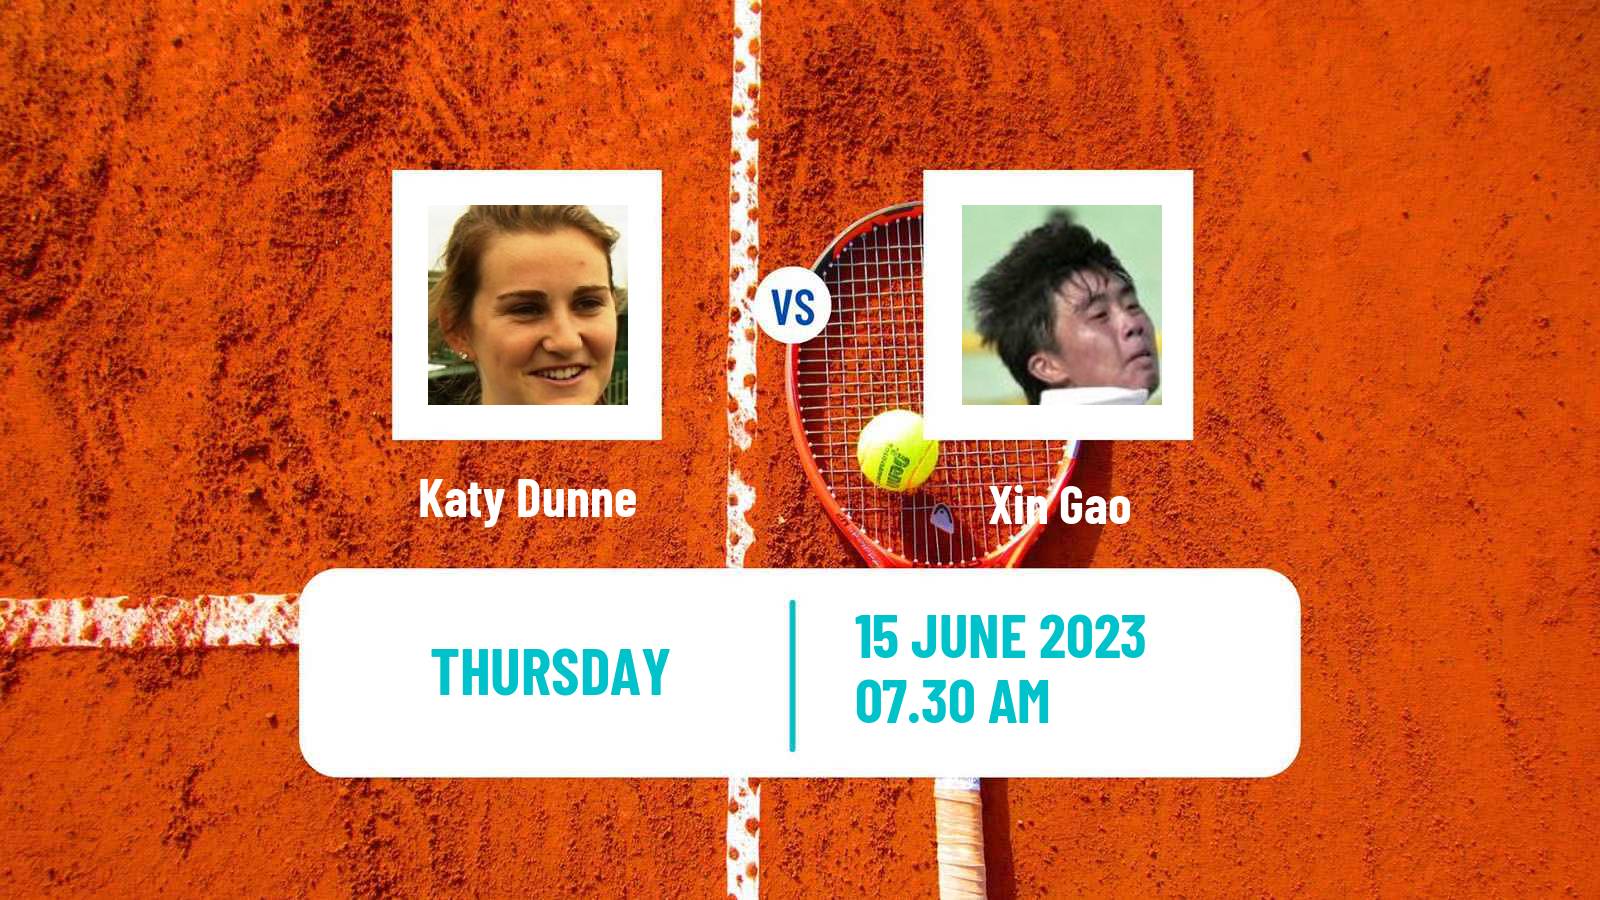 Tennis ITF W25 Guimaraes Women Katy Dunne - Xin Gao